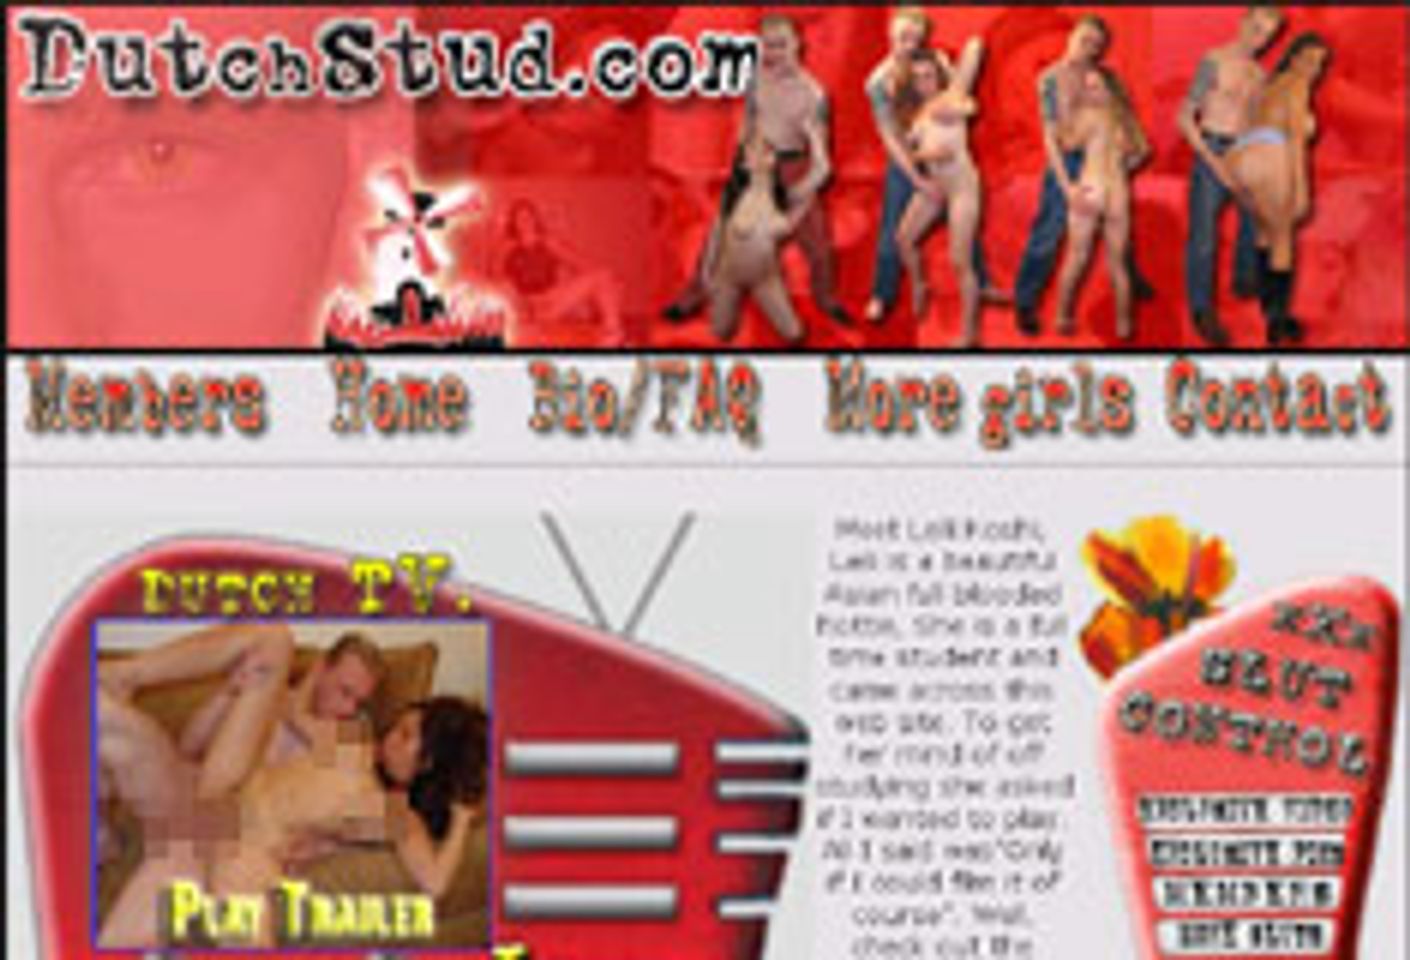 Old Pueblo, DS Productions Launch DutchStud.com - AVN Online